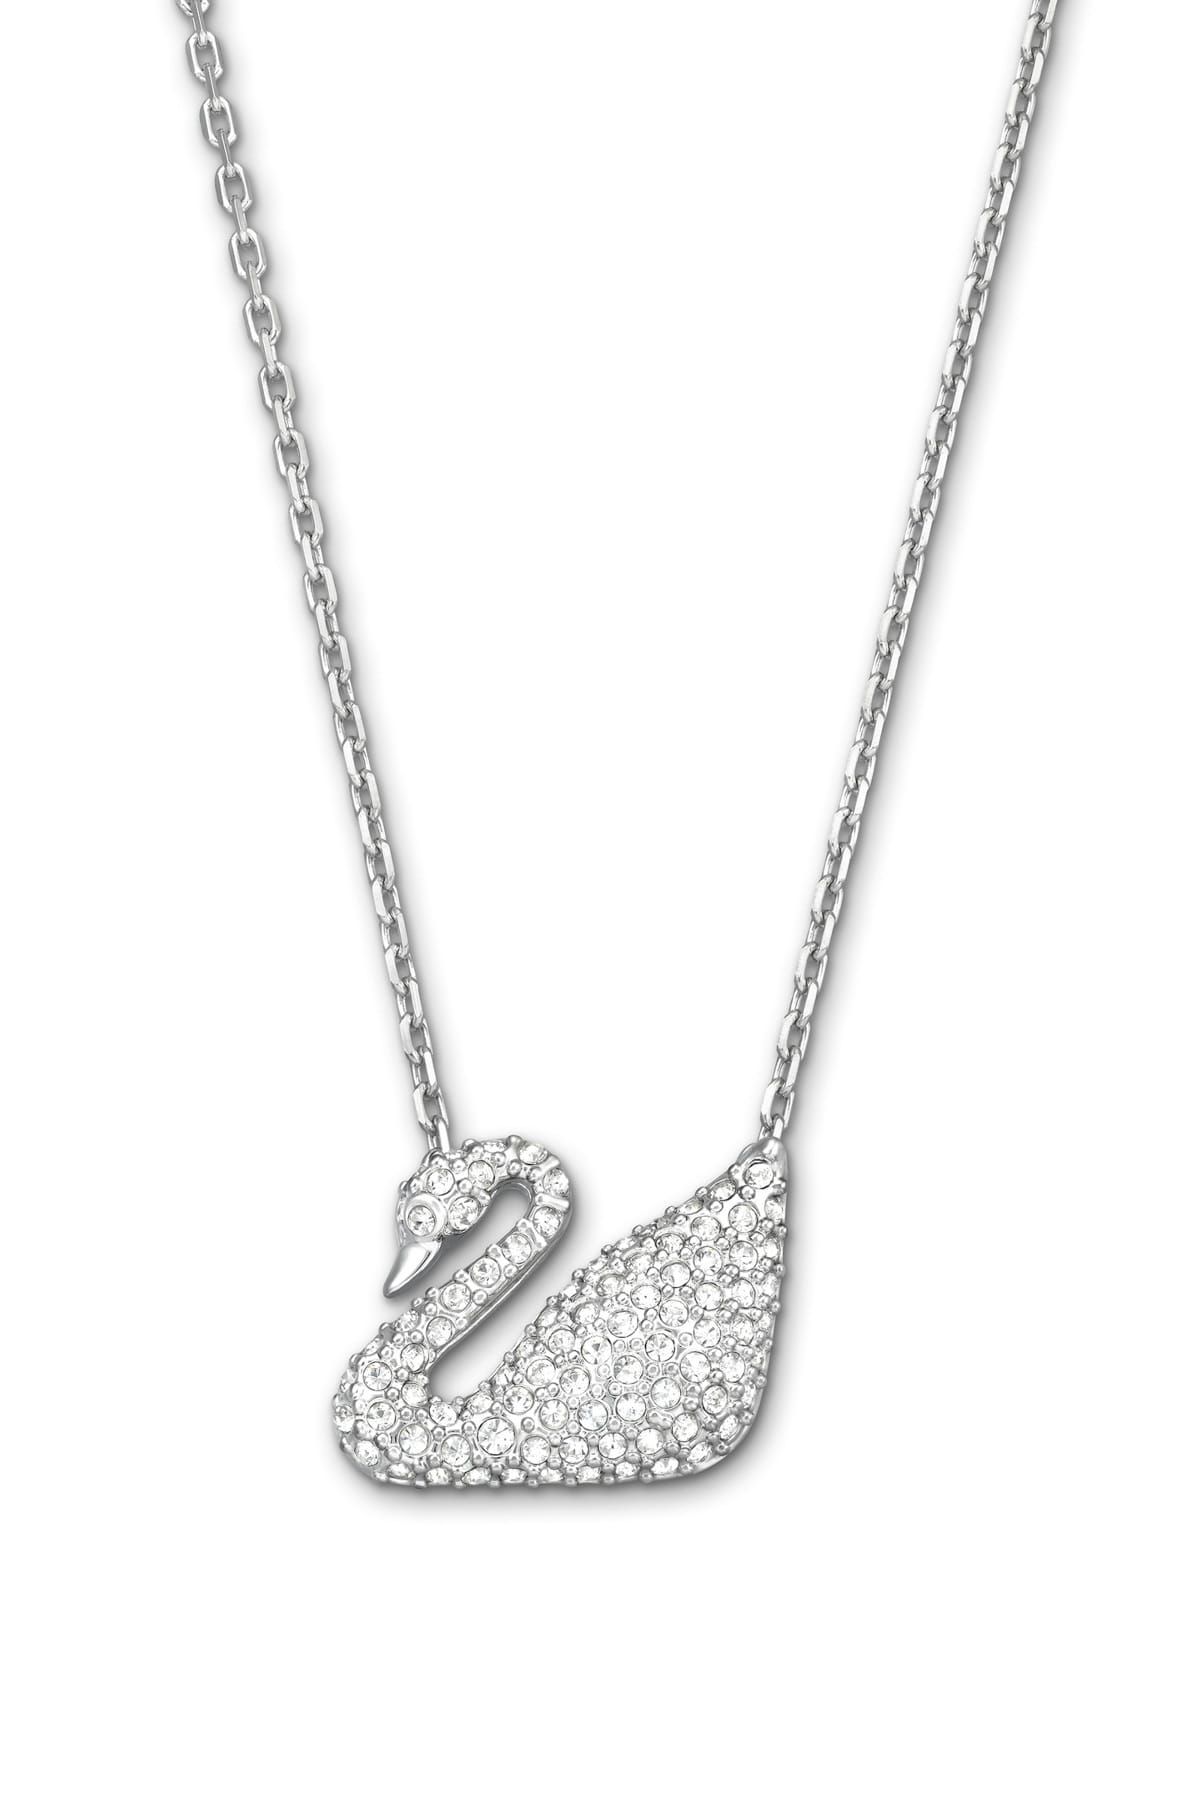 Swarovski Kolye Swan:necklace Cry/rhs 5007735